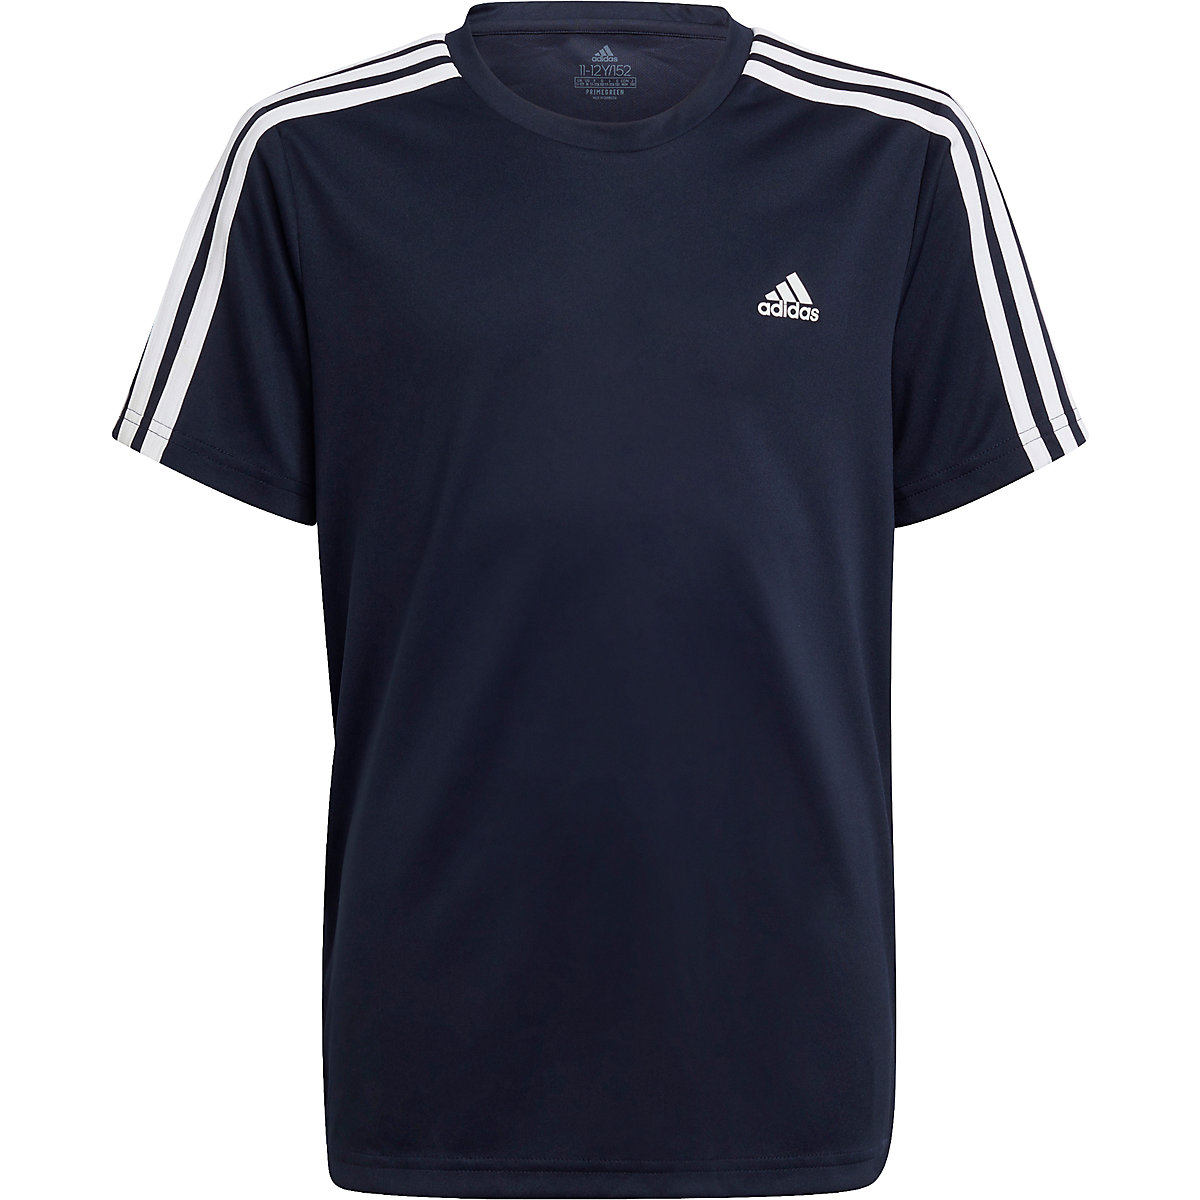 adidas T-Shirt 3S T für Jungen (recycelt) blau-kombi